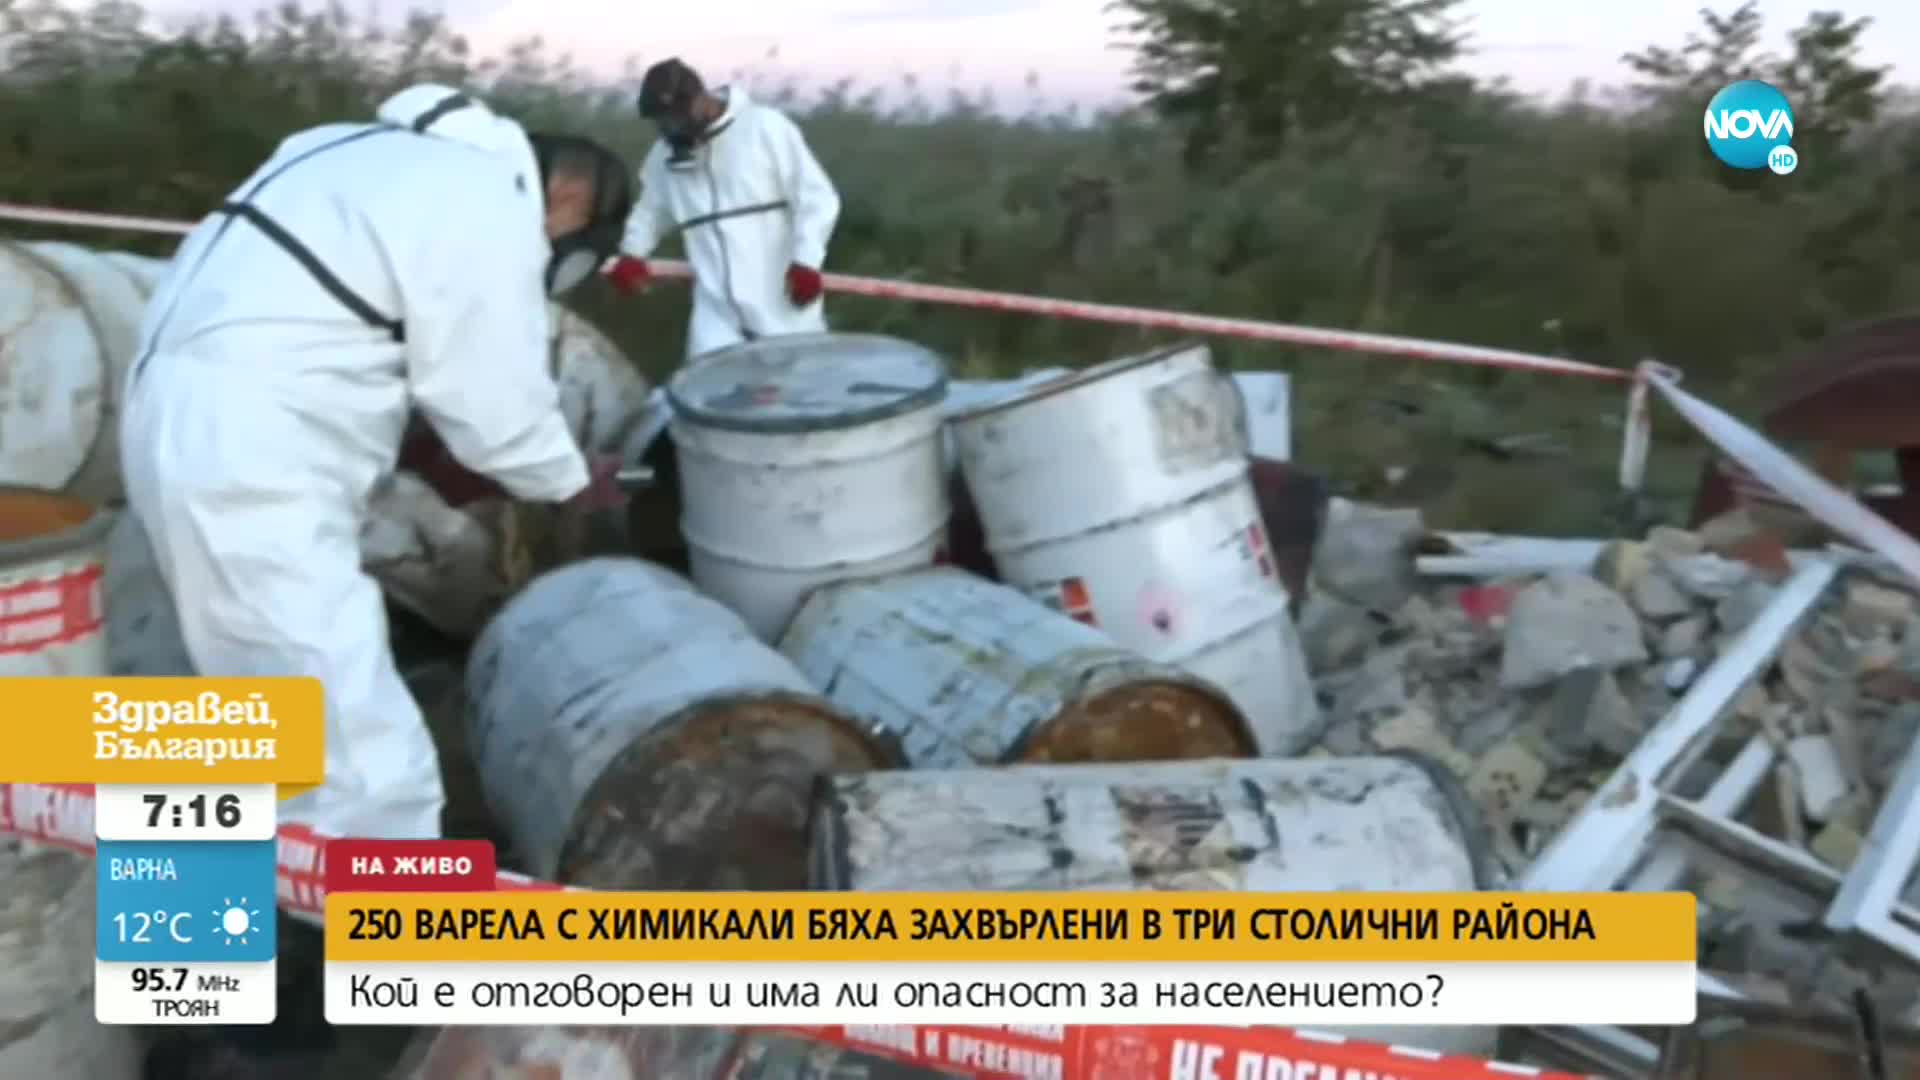 Варелите с опасни химикали, намерени в няколко столична района, са били незаконно складирани